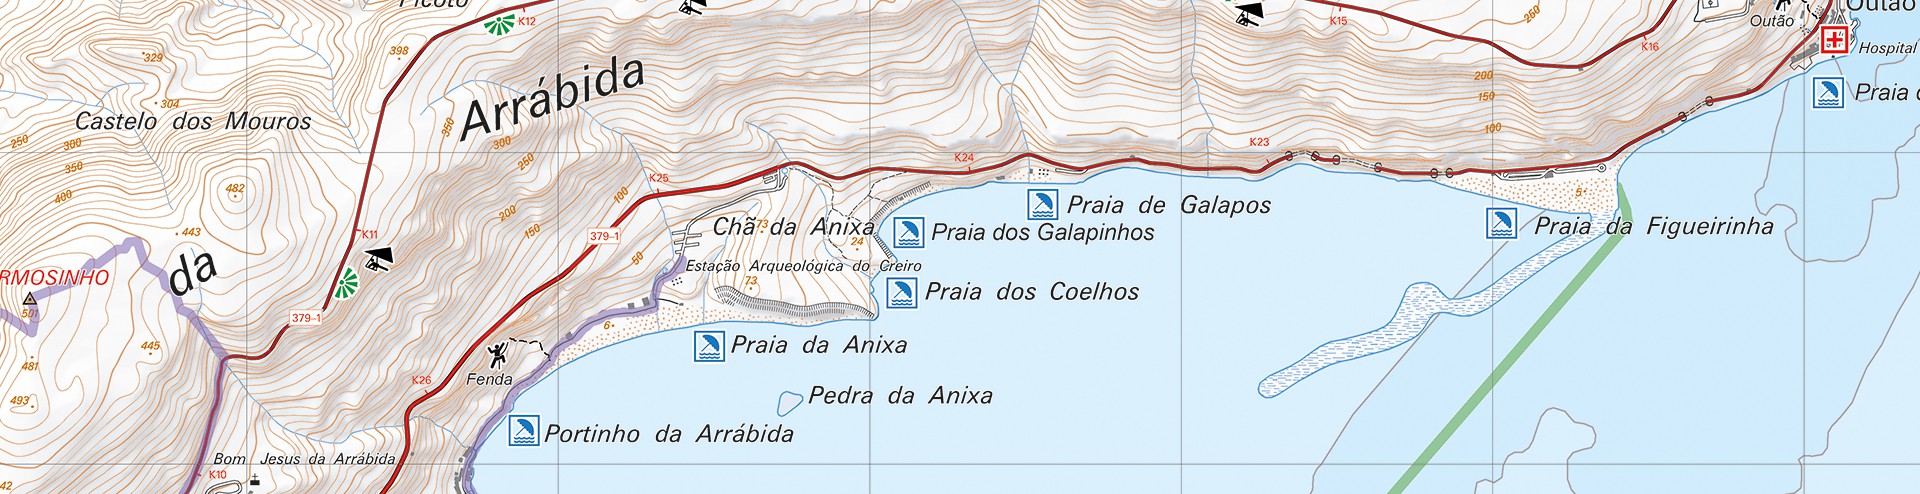 Aventesmas - Portugal Num Mapa